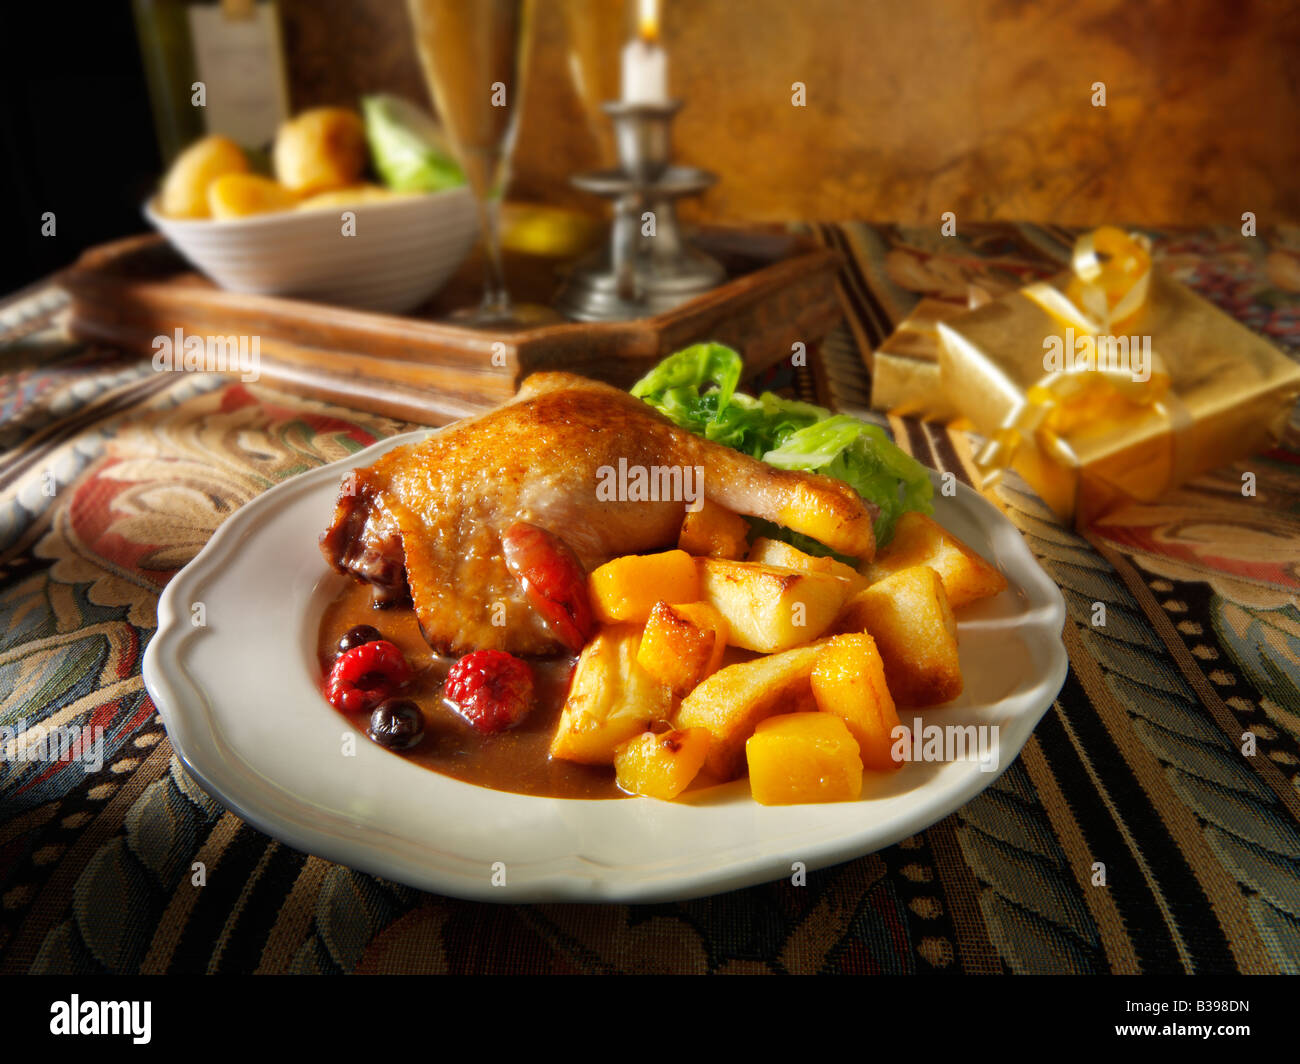 Cuisse de canard au jambon rôti servie avec une sauce aux fruits d'hiver, des pommes de terre rôties et des légumes dans un cadre festif Banque D'Images